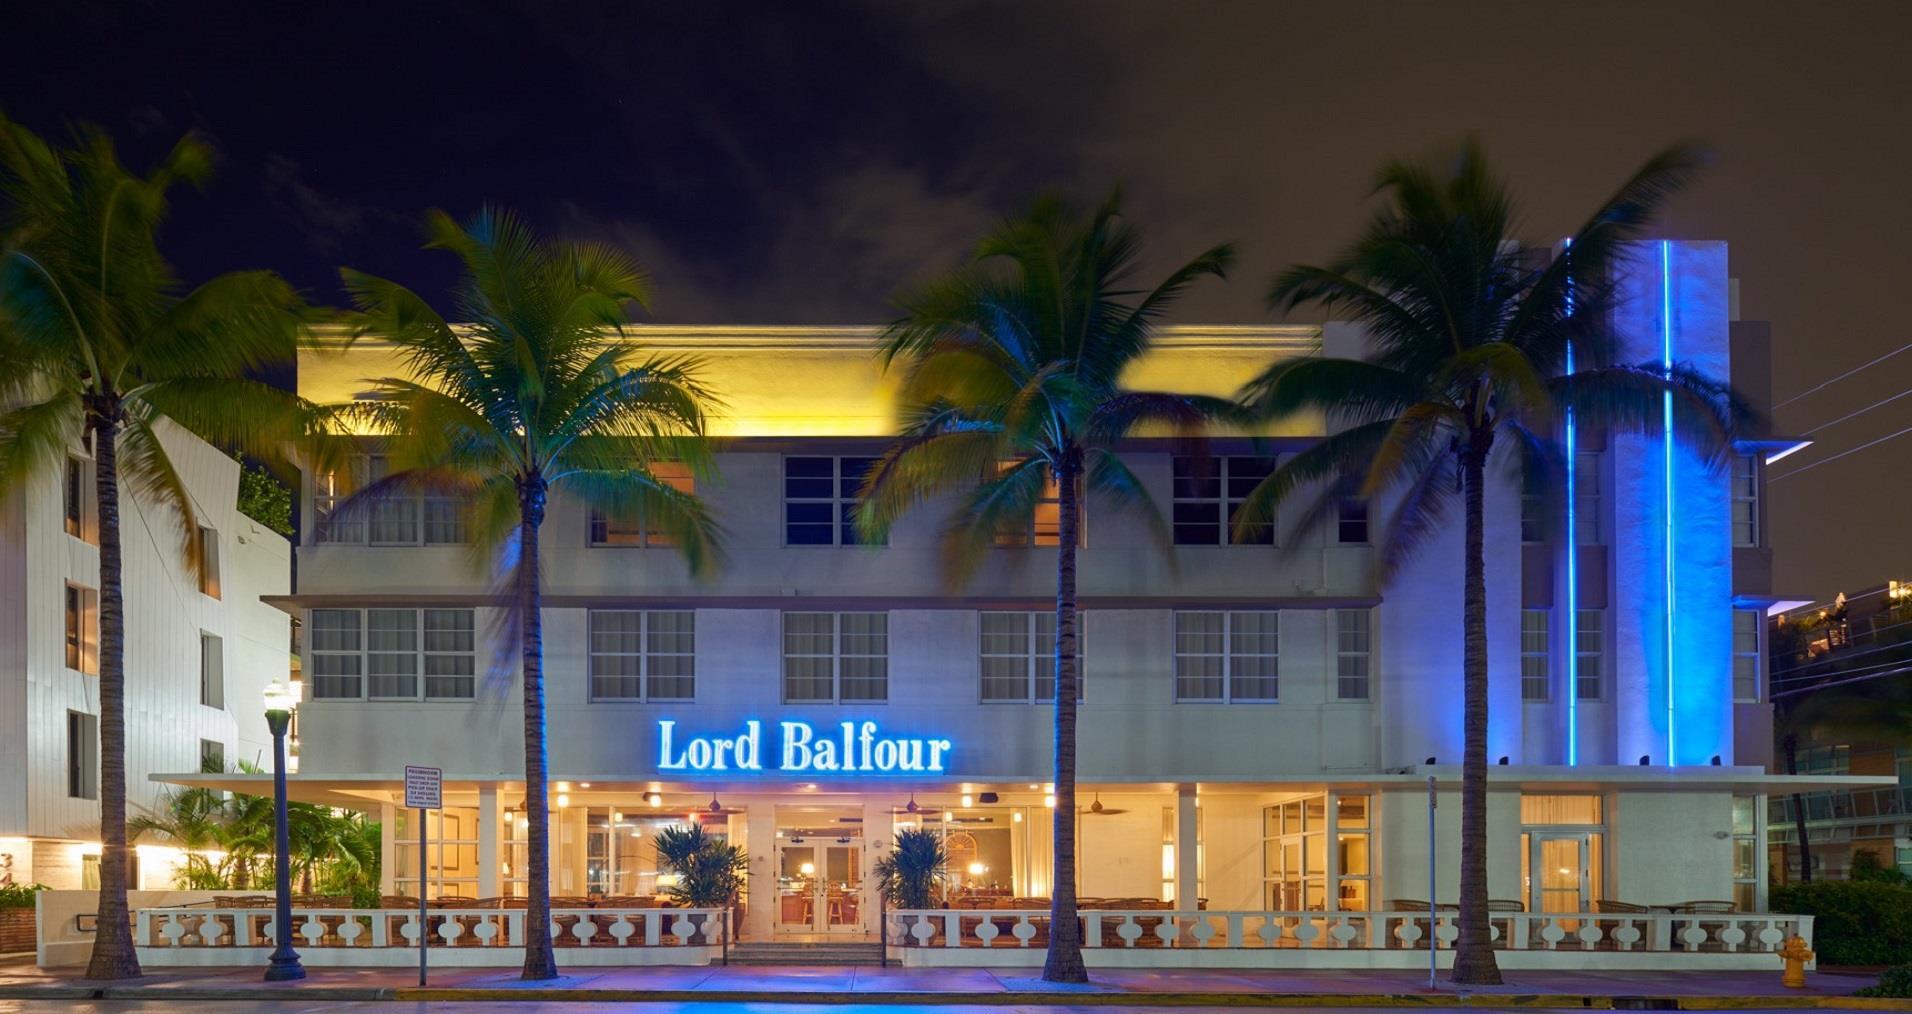 The Balfour Hotel in Miami Beach, FL